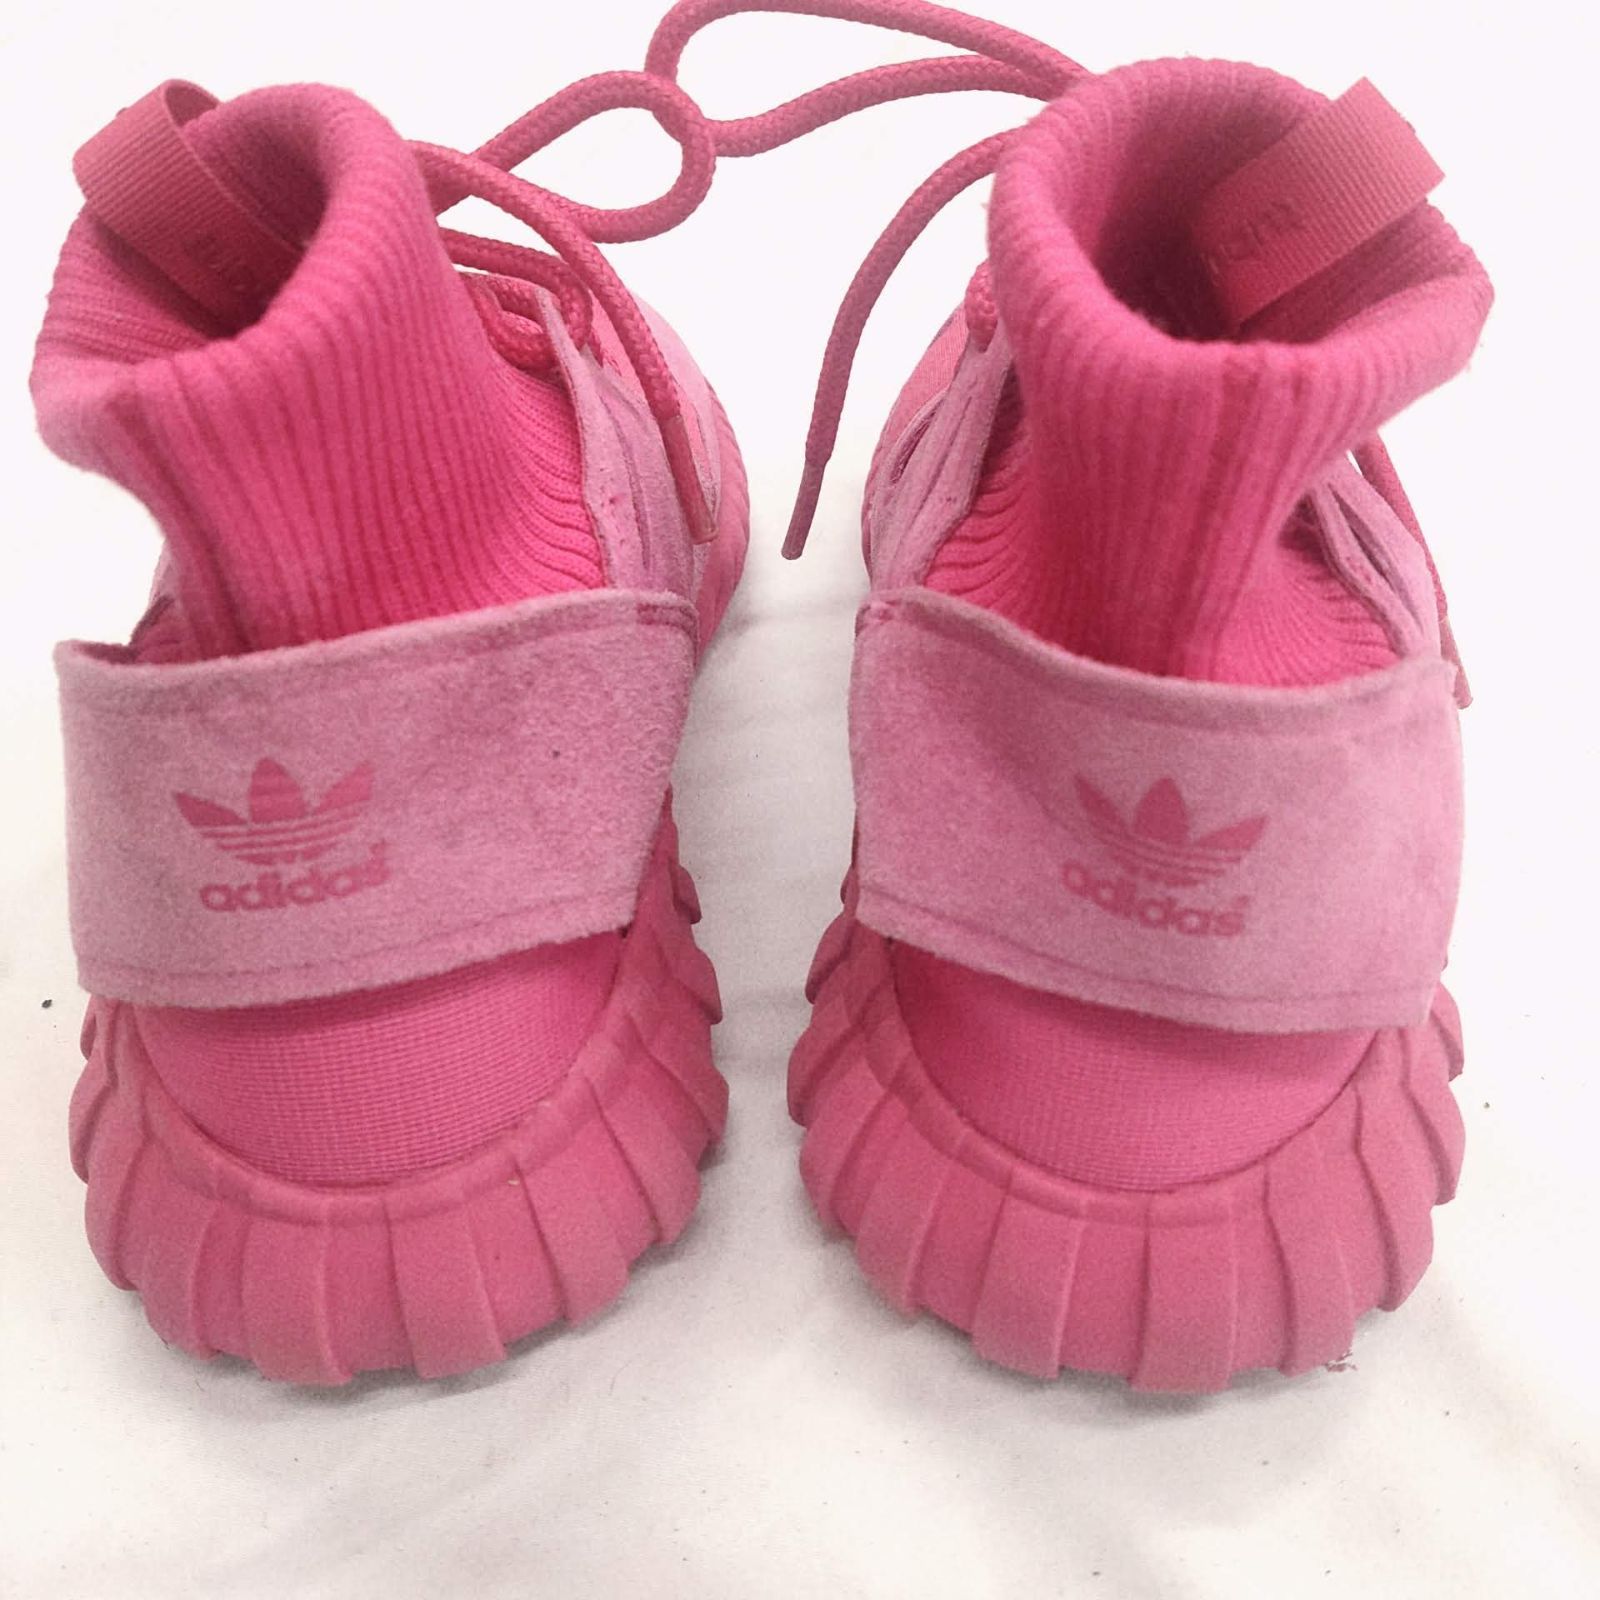 激安特価品 アディダス チューブラー ドゥーム エキップメント ピンク - 靴